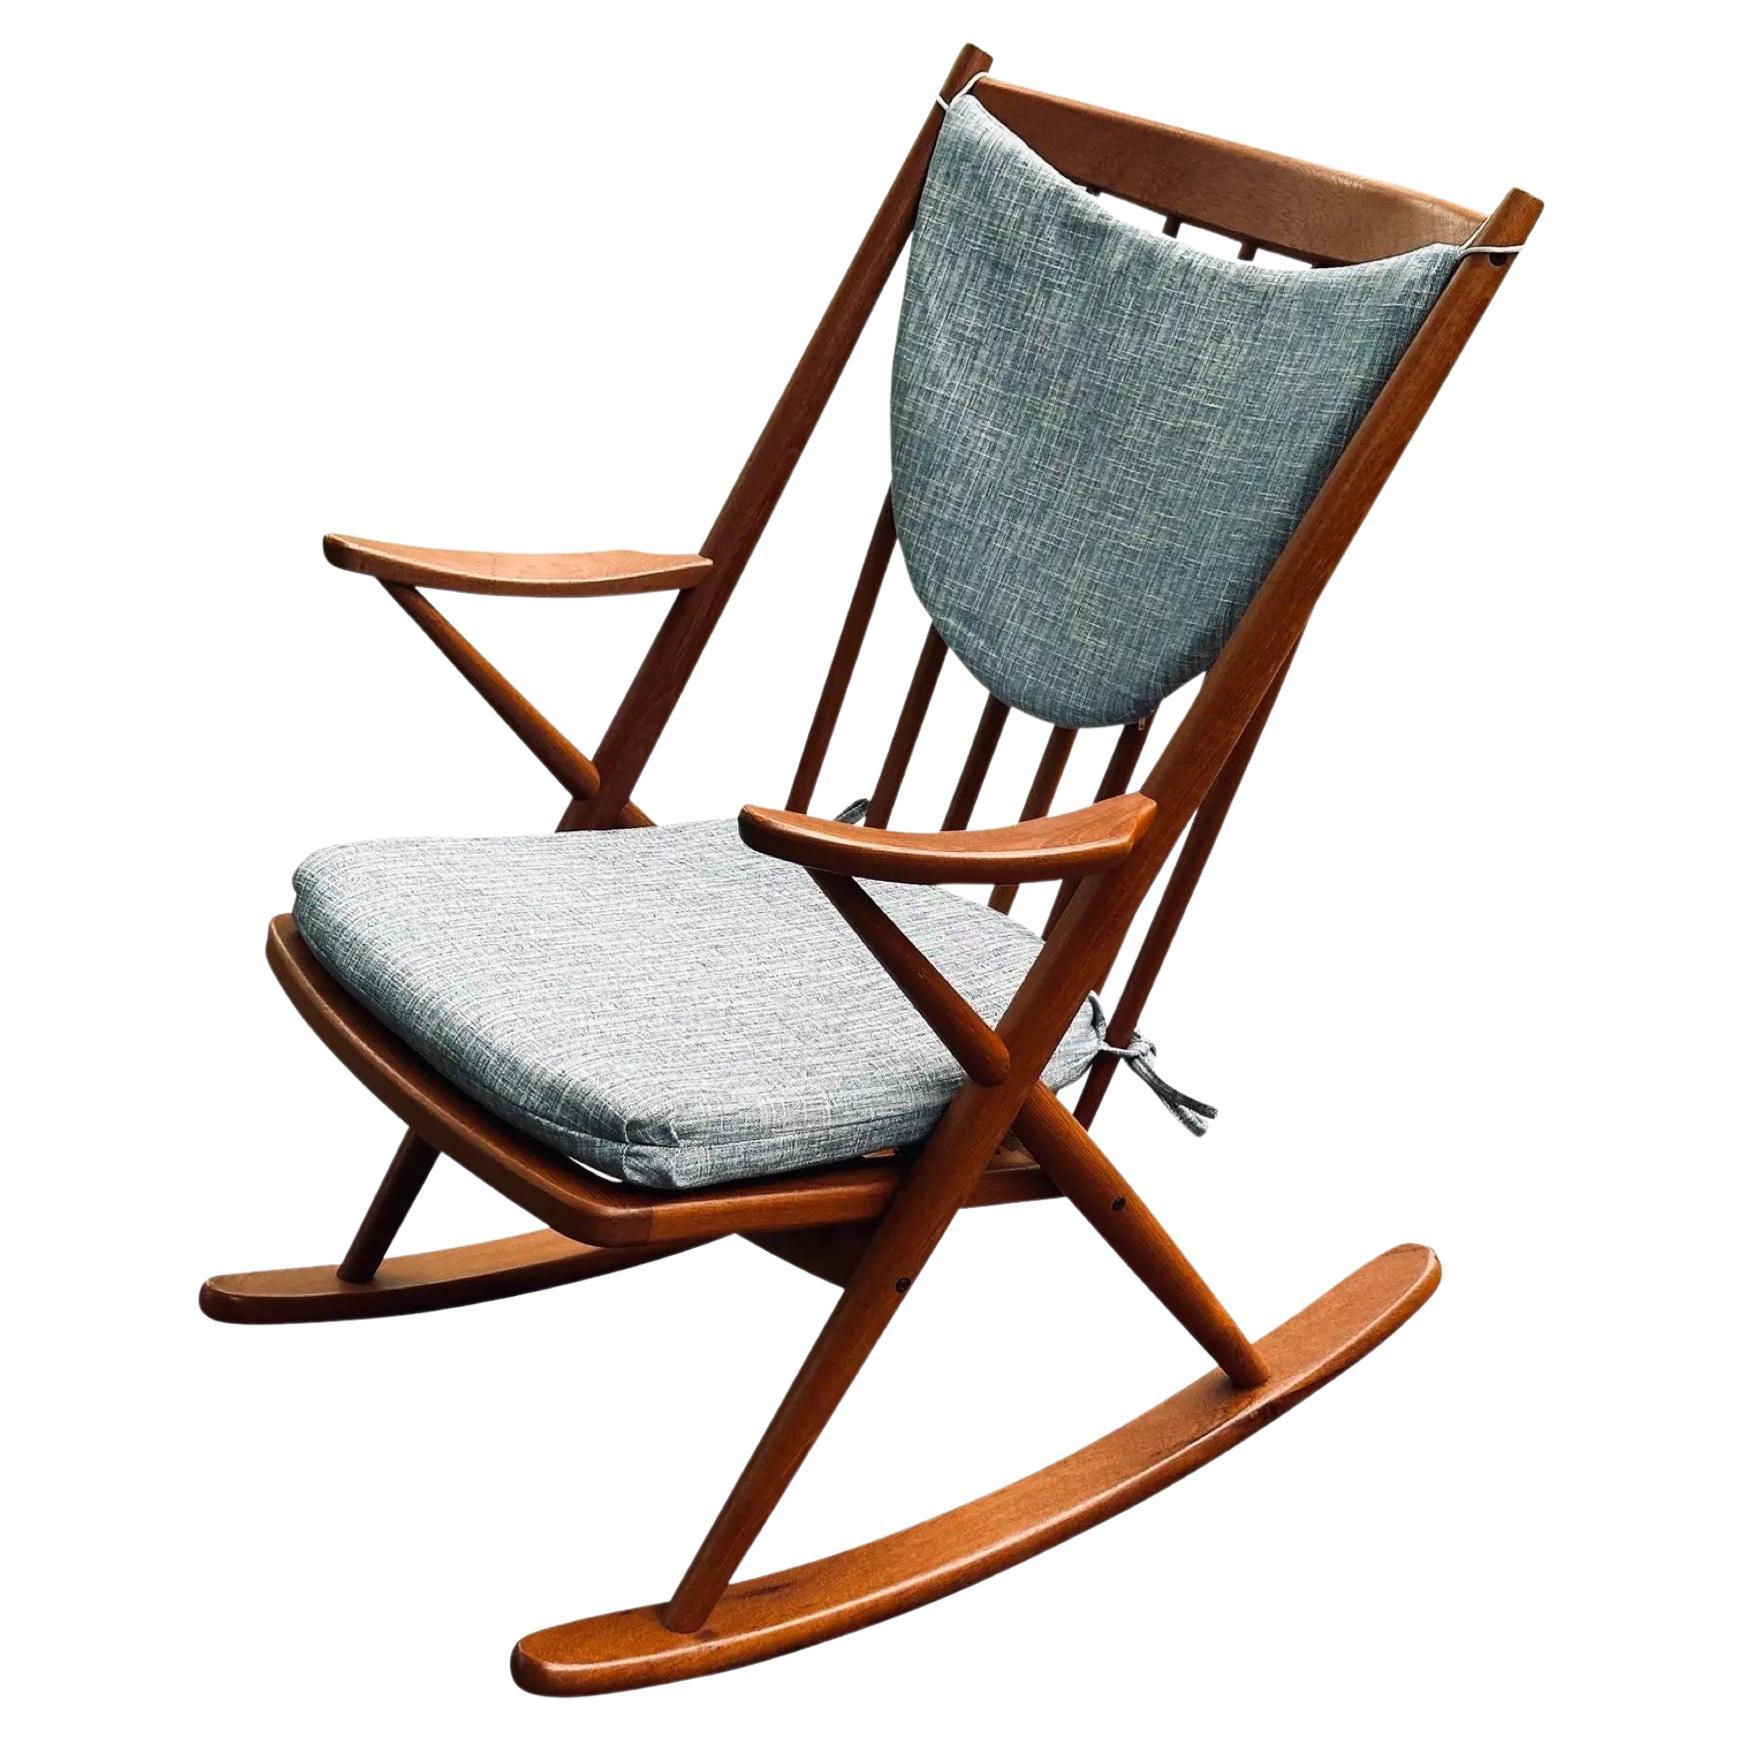 Restored Mid-Century Danish Modern Teak Rocker Rocking Chair